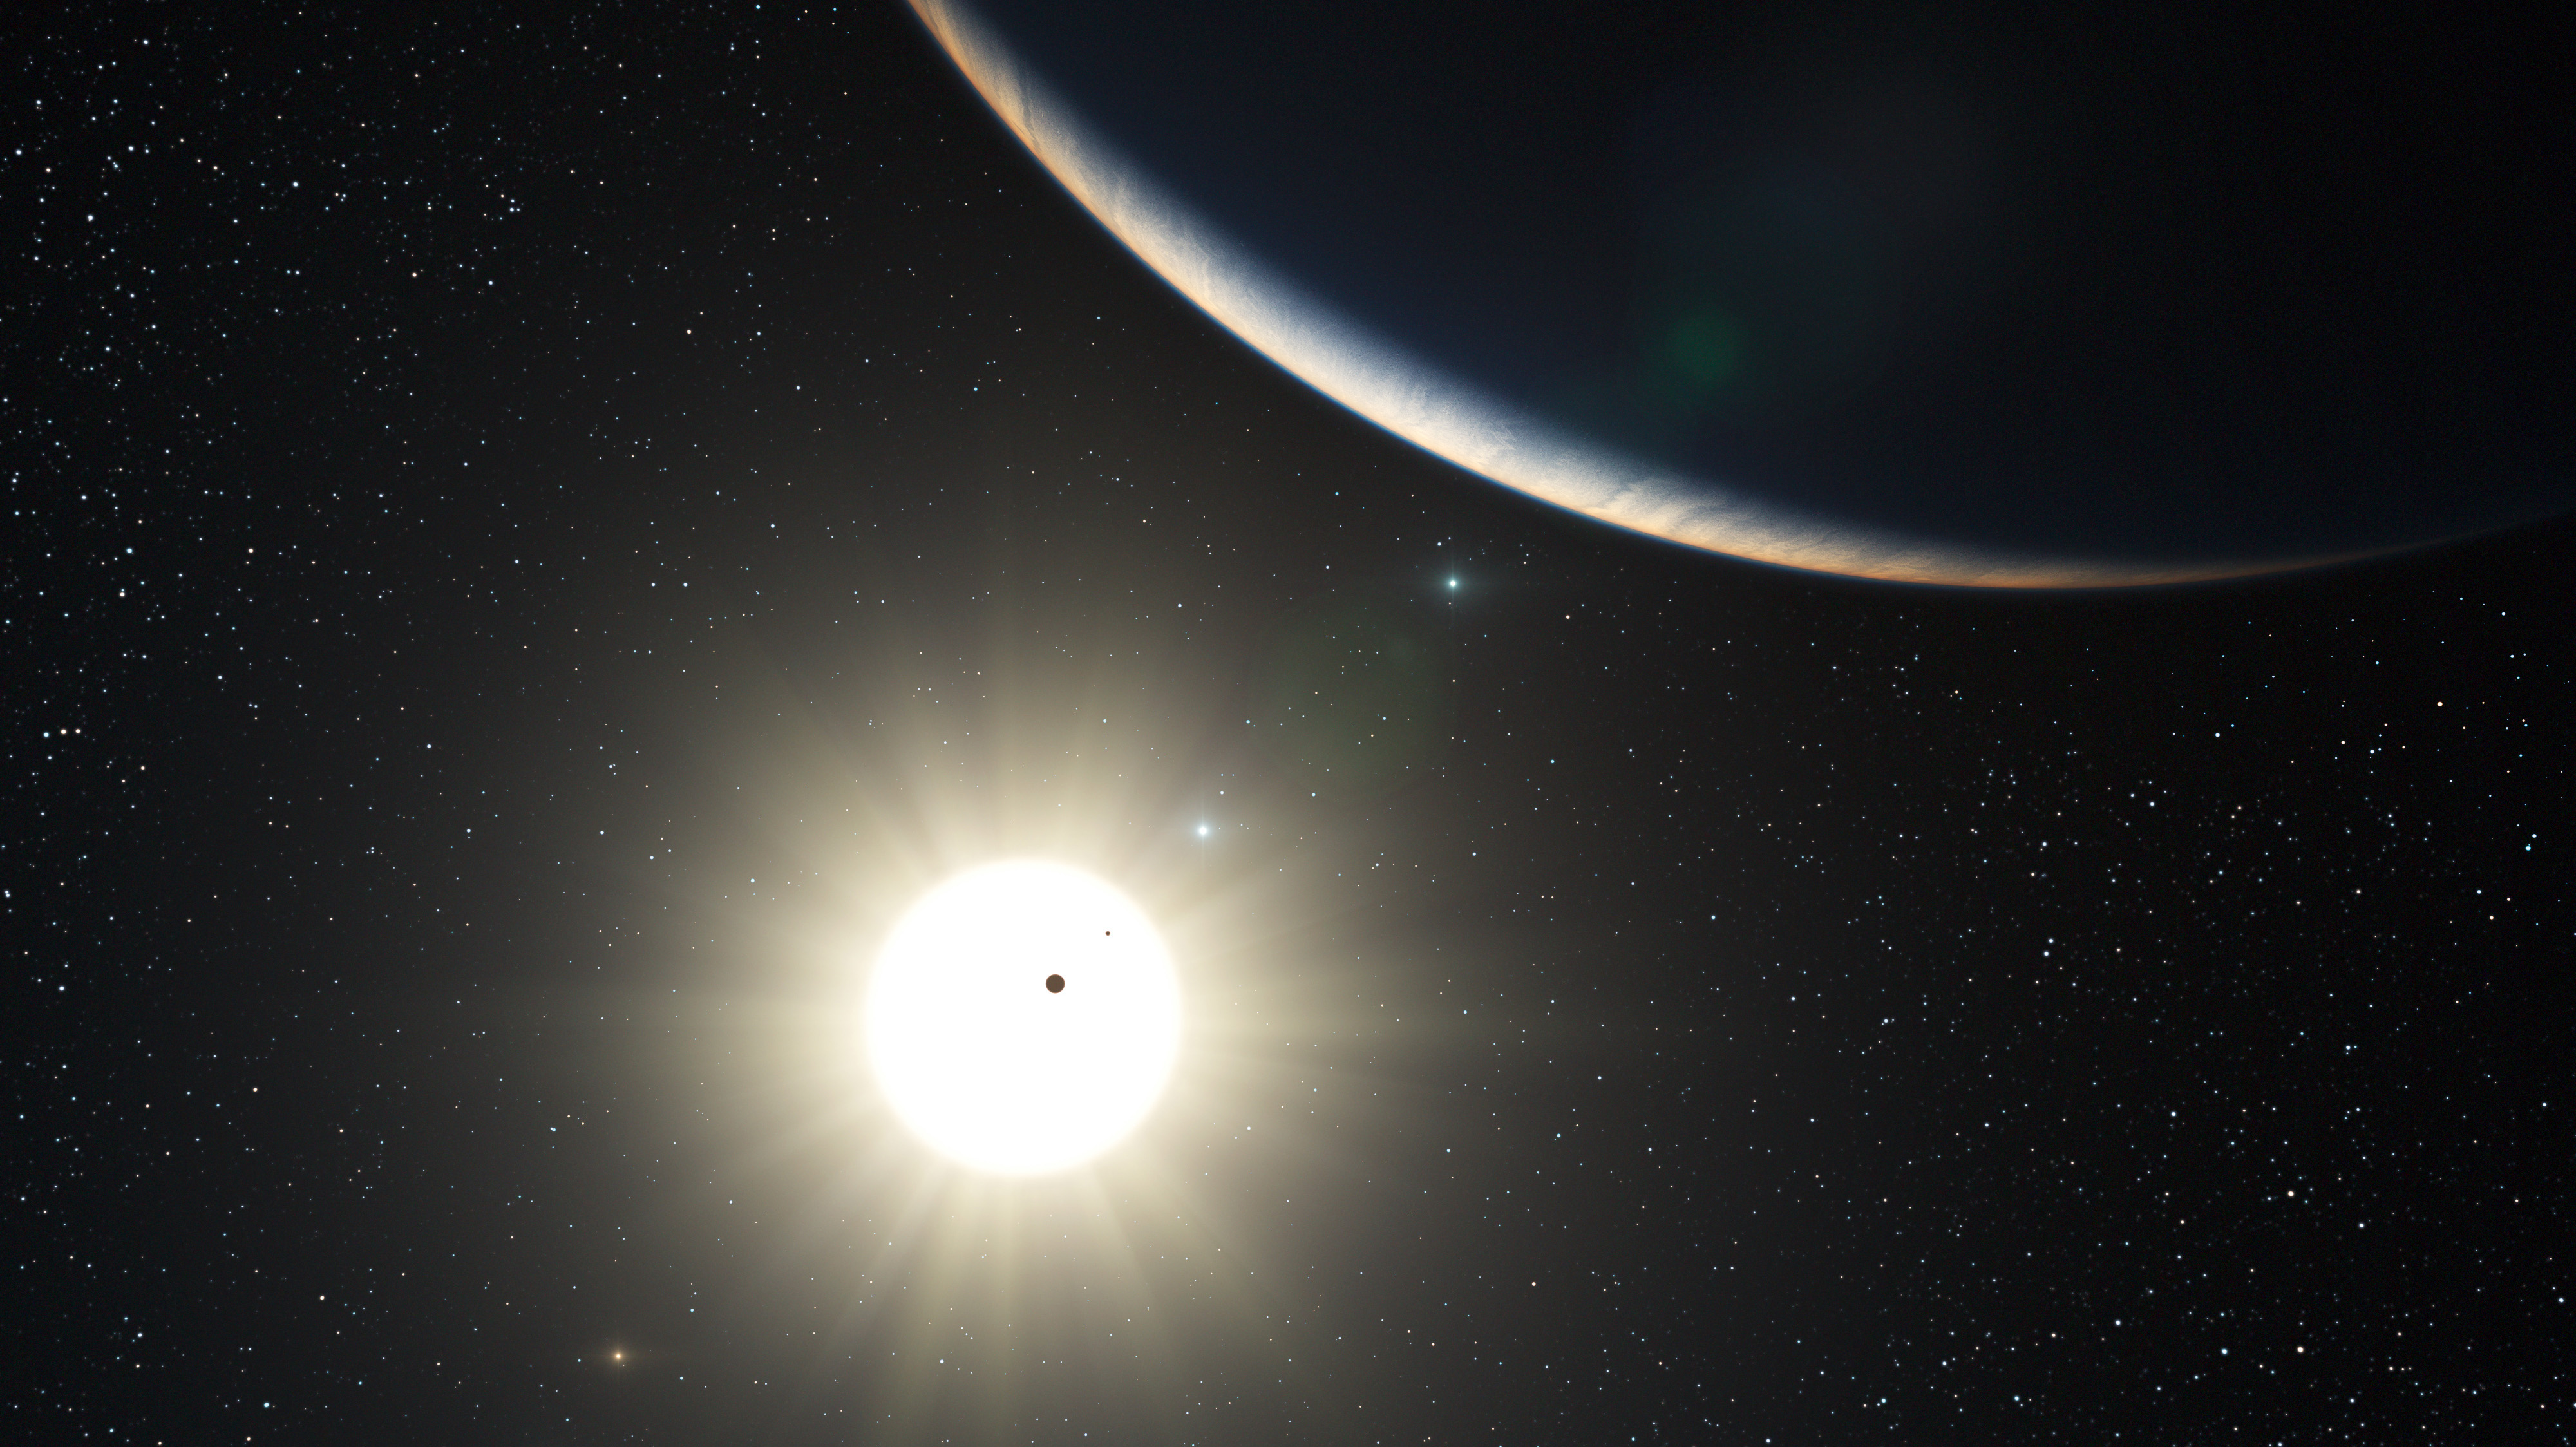 Observatorio Paranal buscará exoplanetas gracias a avanzada herramienta